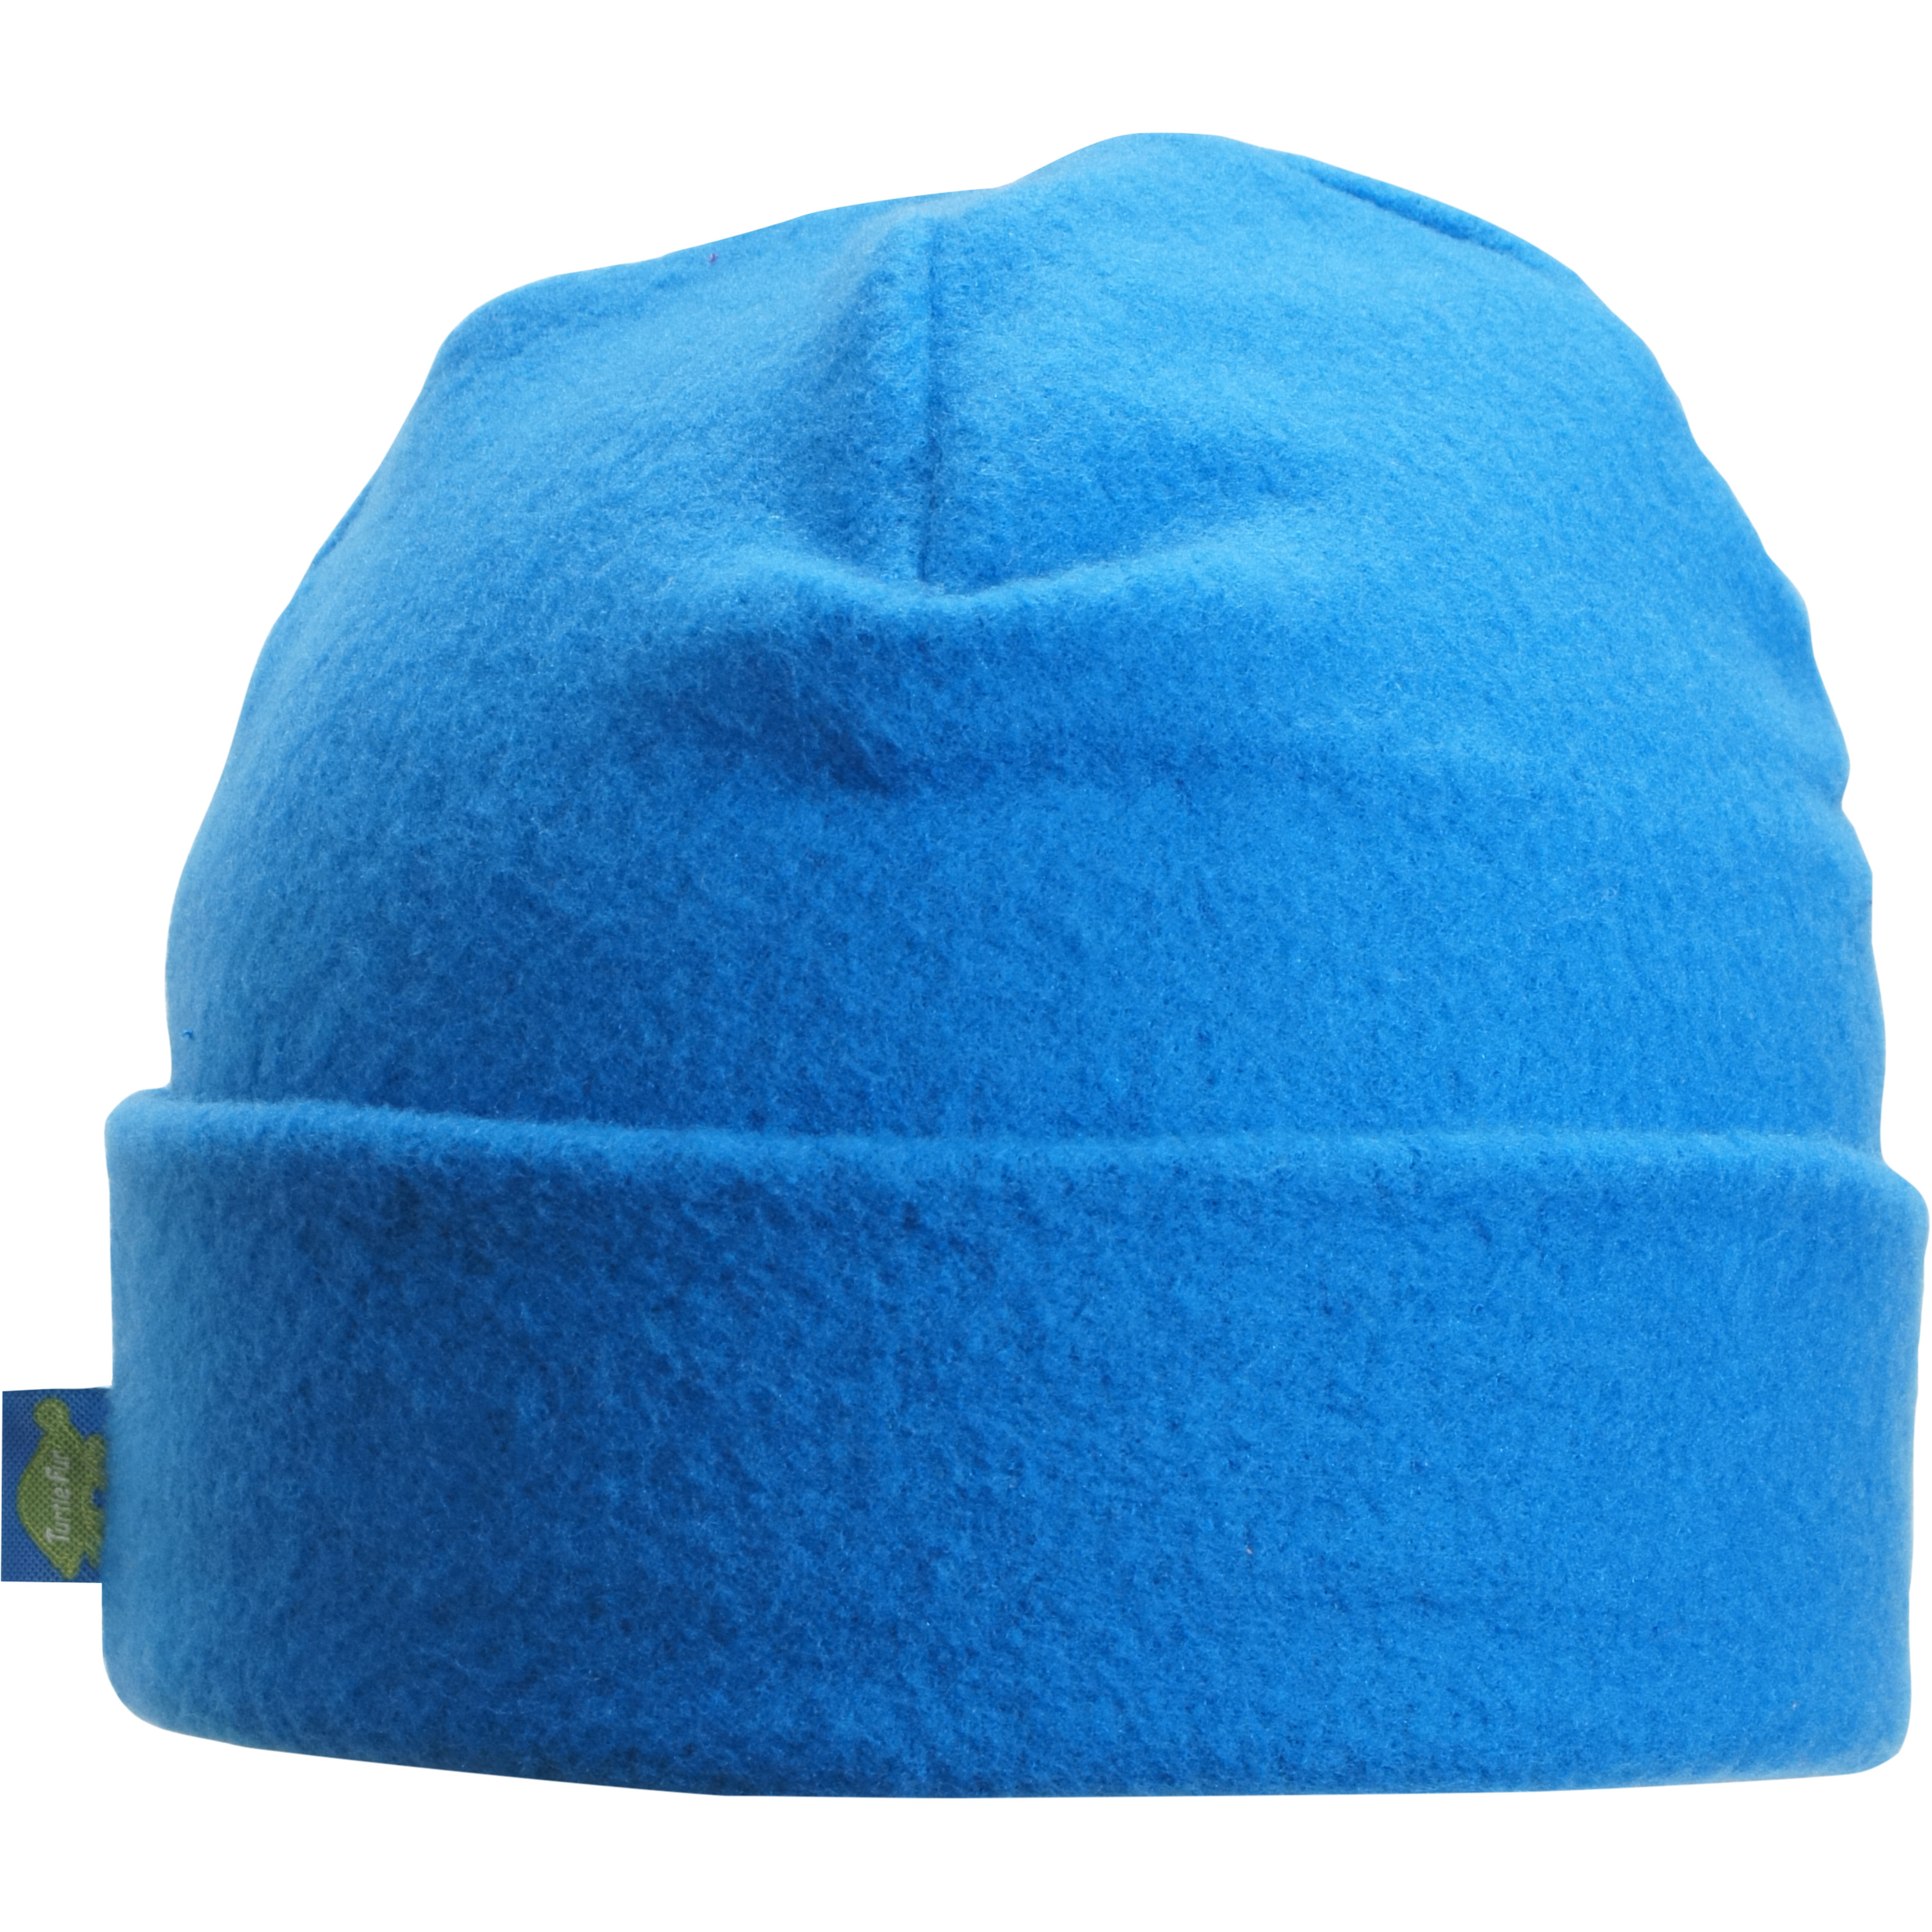 Original Turtle Fur Fleece - The Hat, Heavyweight Fleece Watch Cap ...